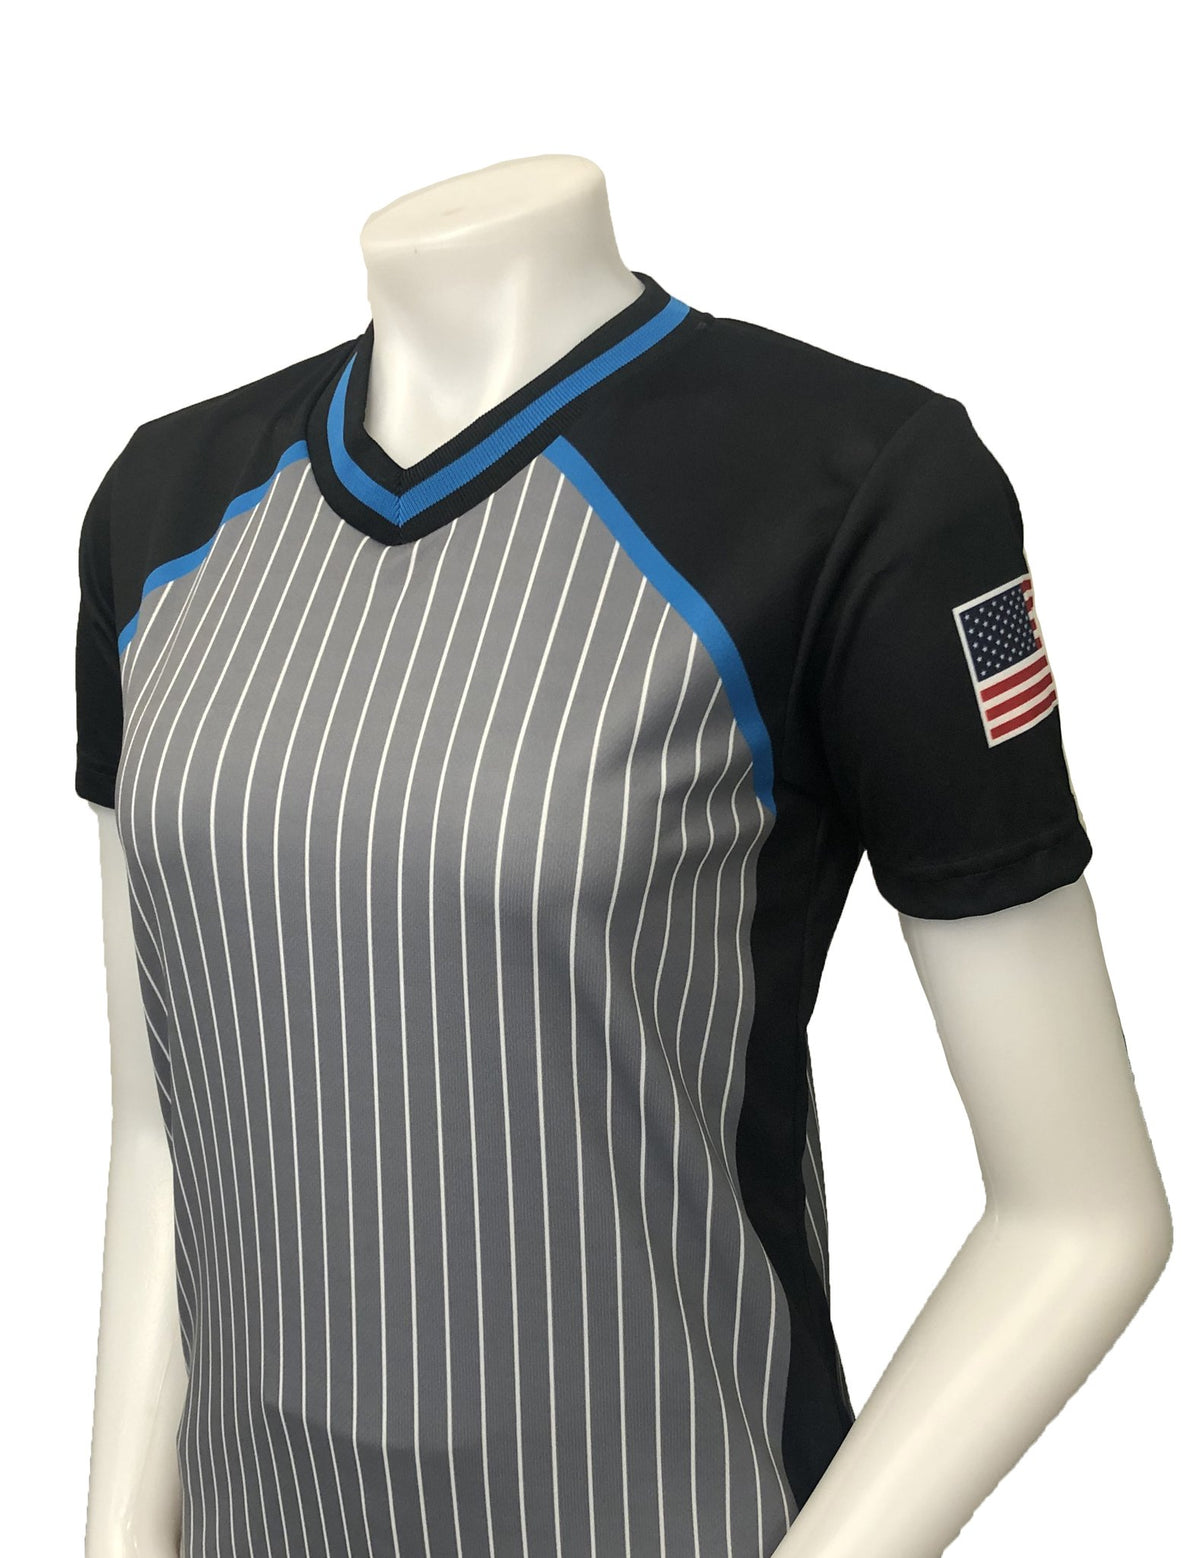 smitty | Estados Unidos-239 | Camiseta de árbitro de baloncesto universitario de la NCAA para mujer